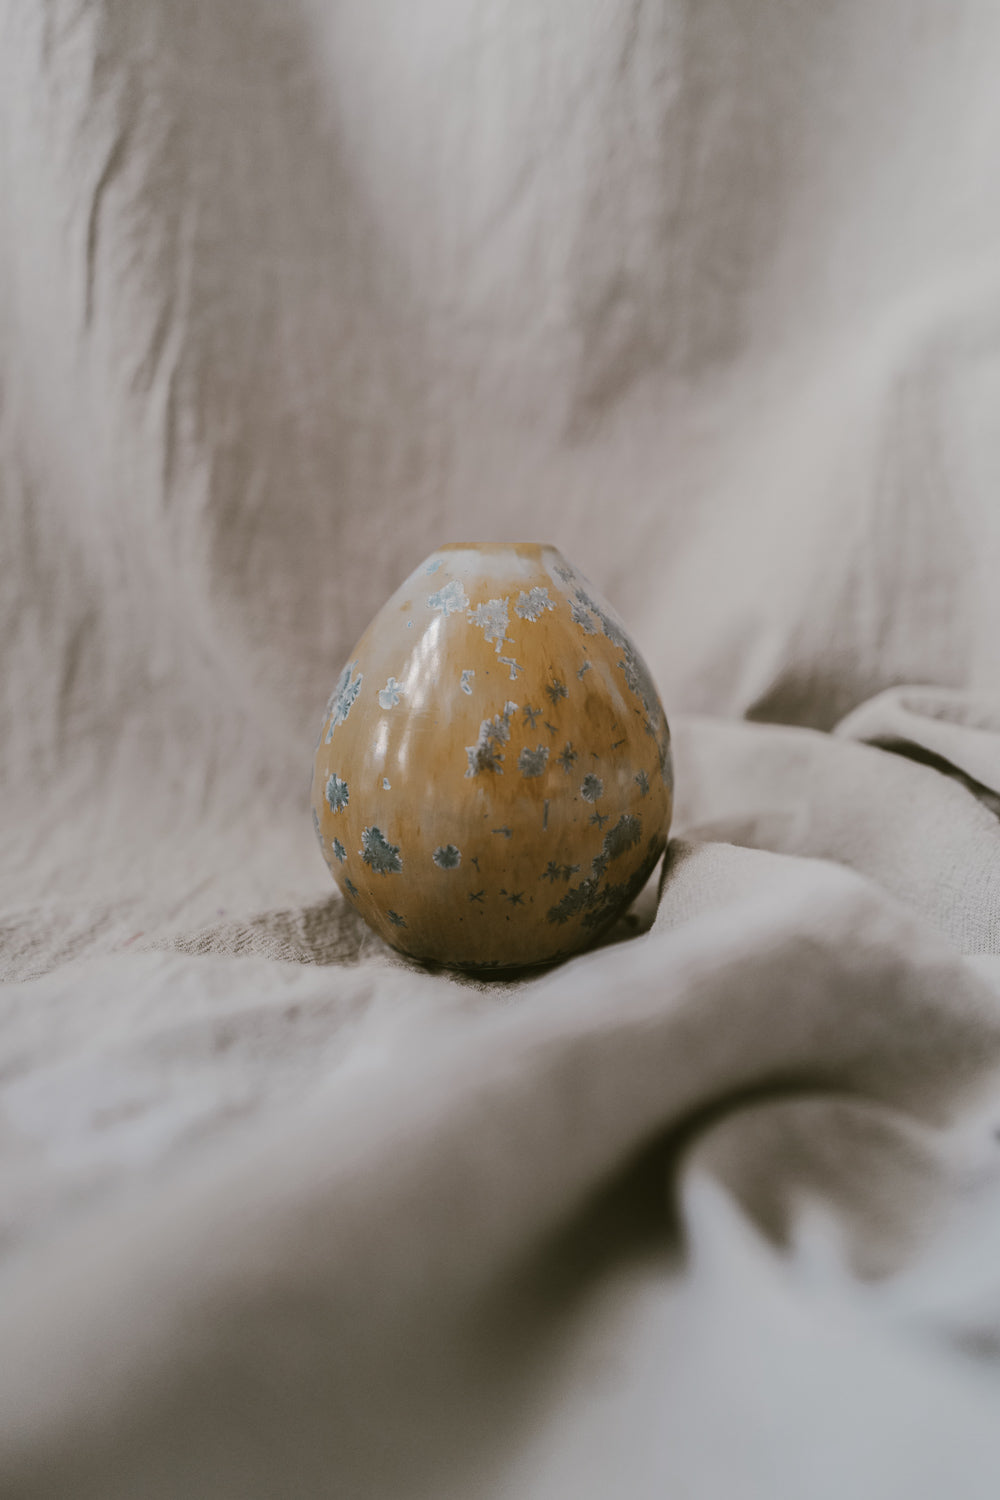 Blue Egg Vase